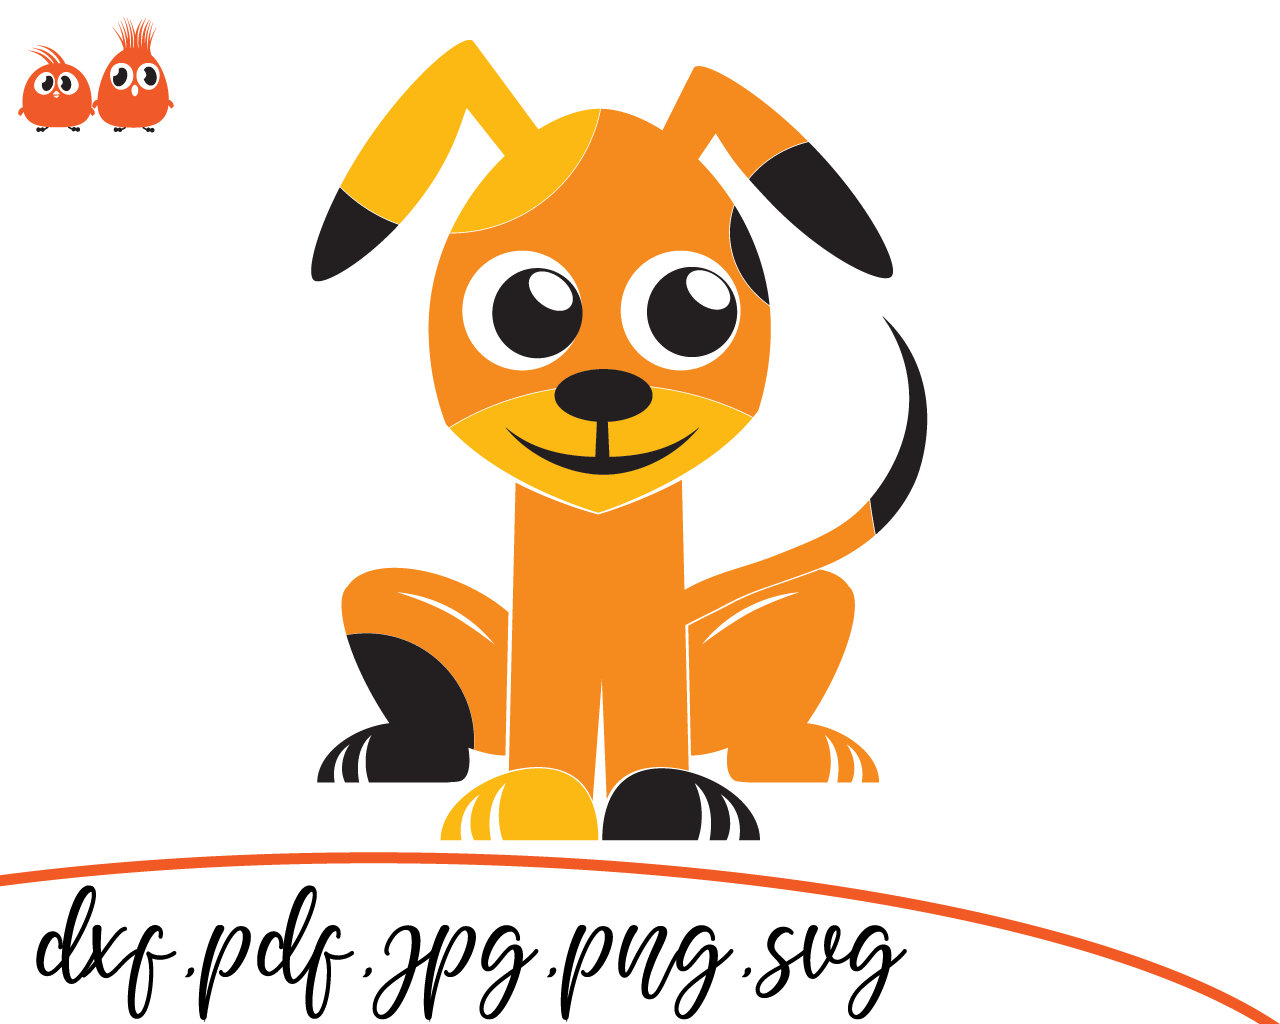 Download Dog Puzzle Dog Puzzle Svg File Dog Puzzle Dxf Dog Puzzle Cut File Dog Puzzle Cricut